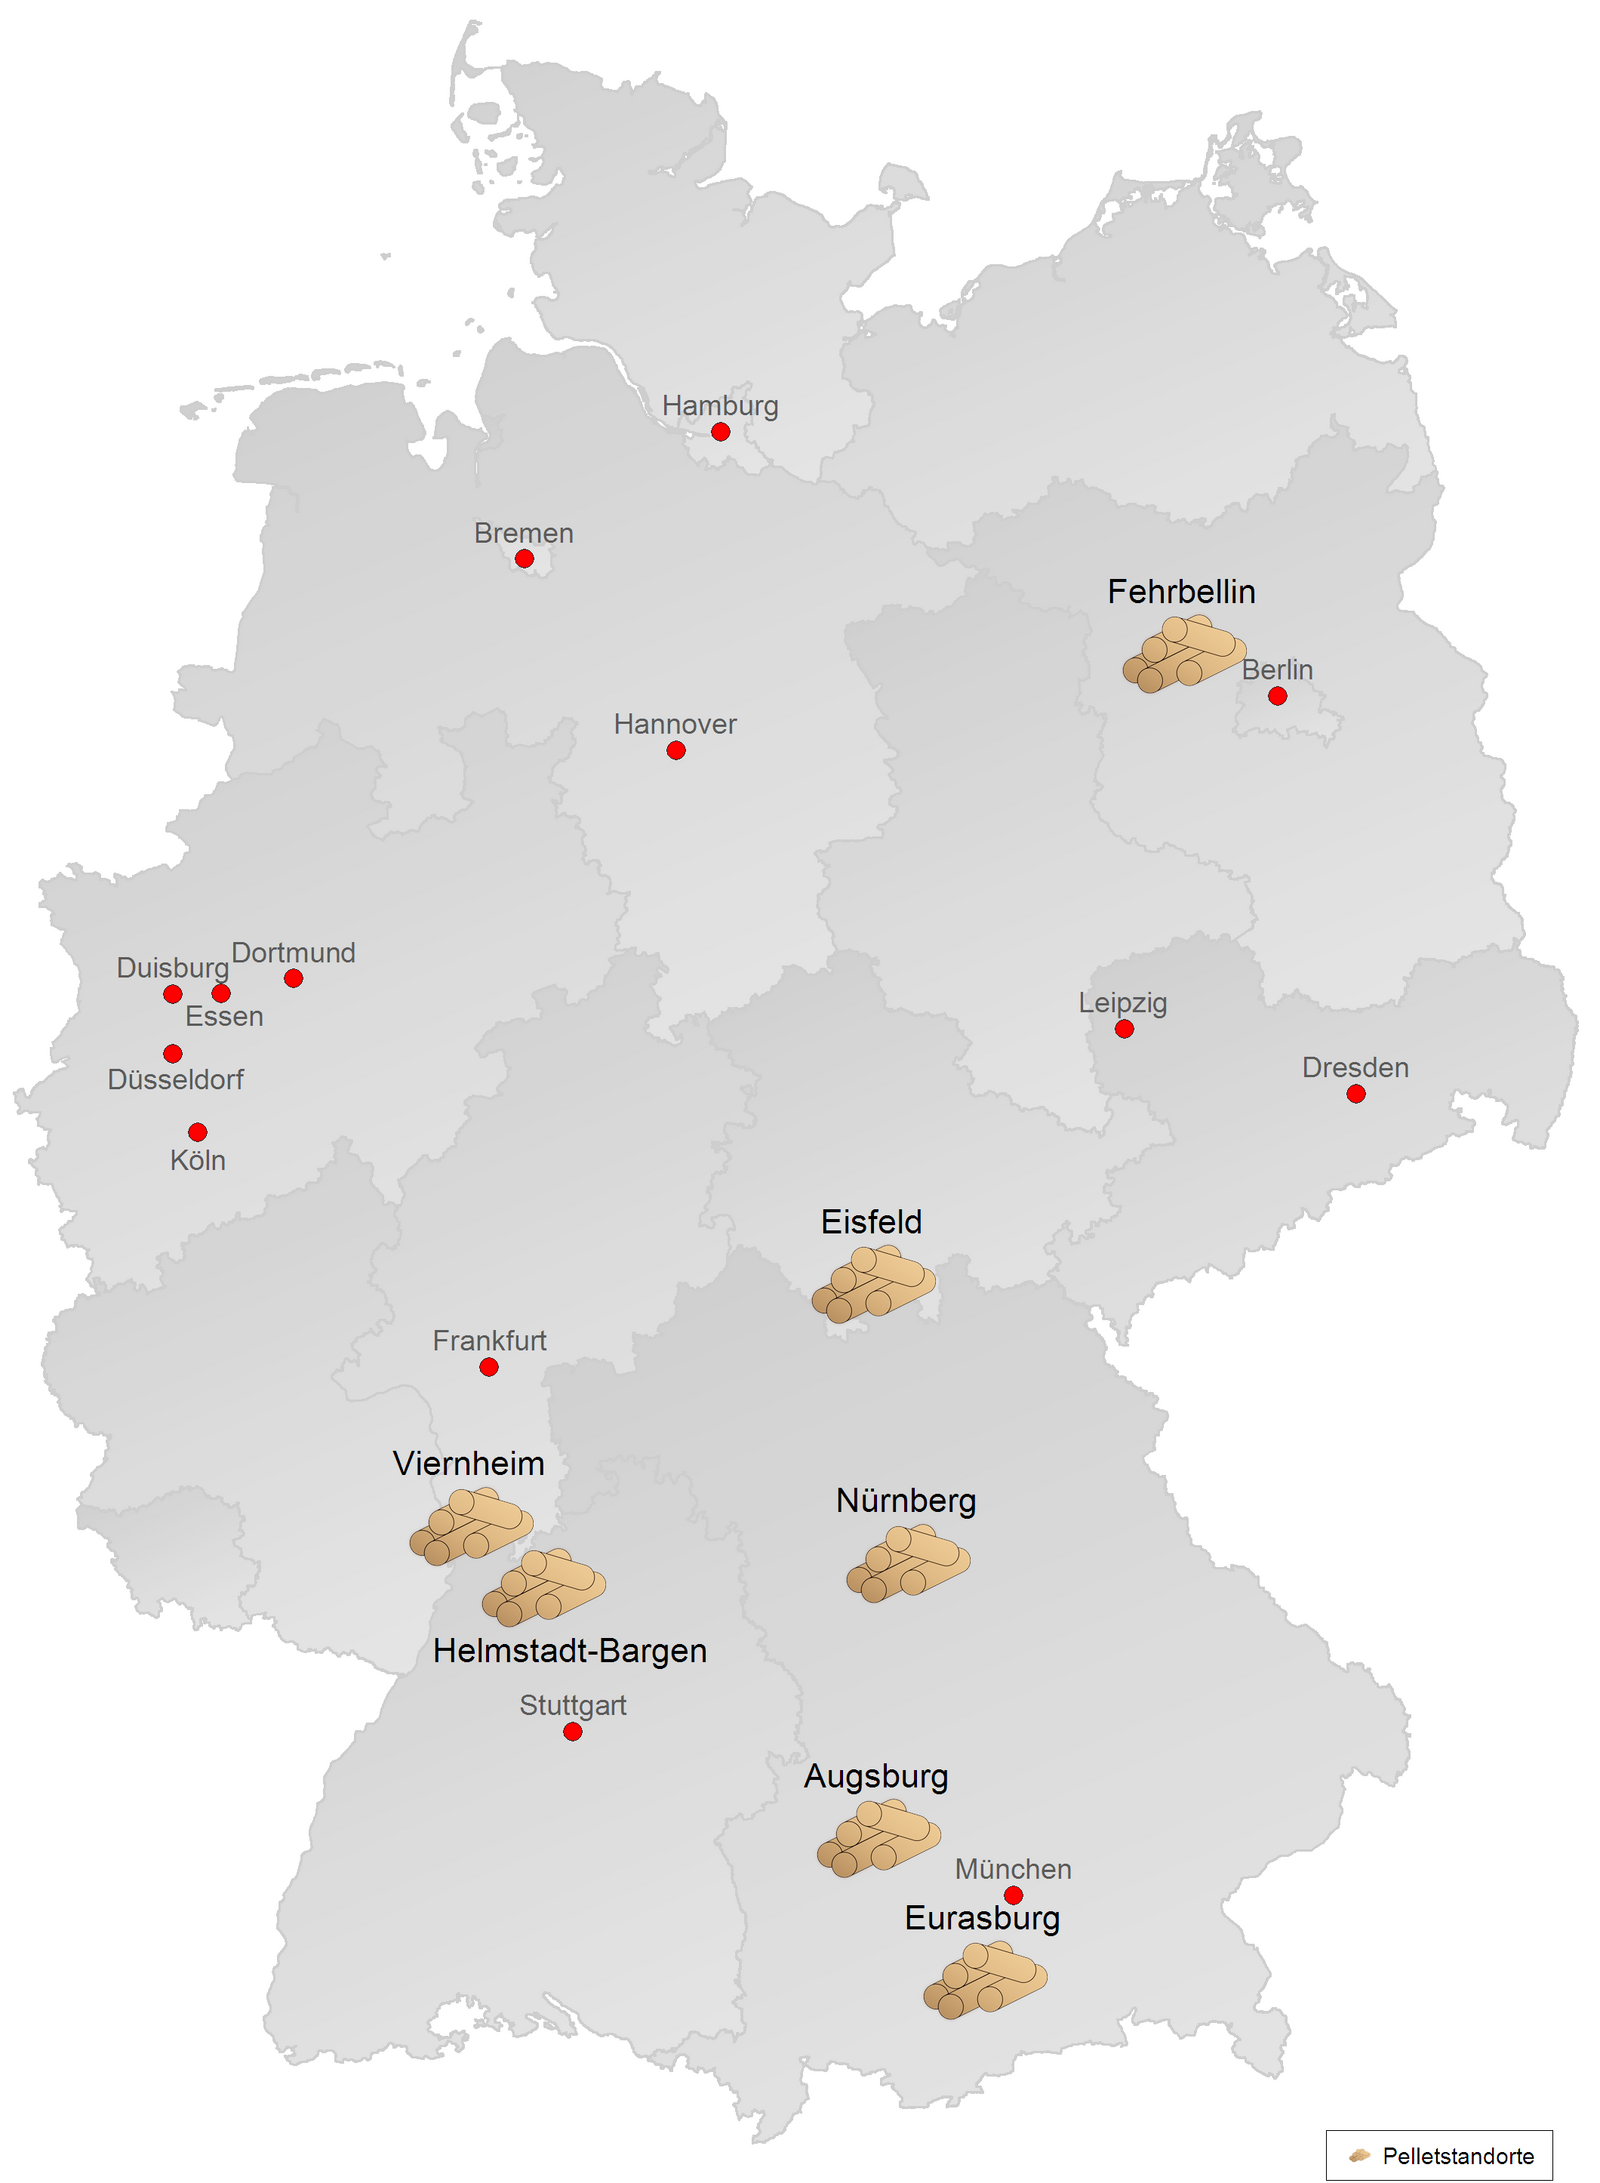 Germany-wide pellet sites